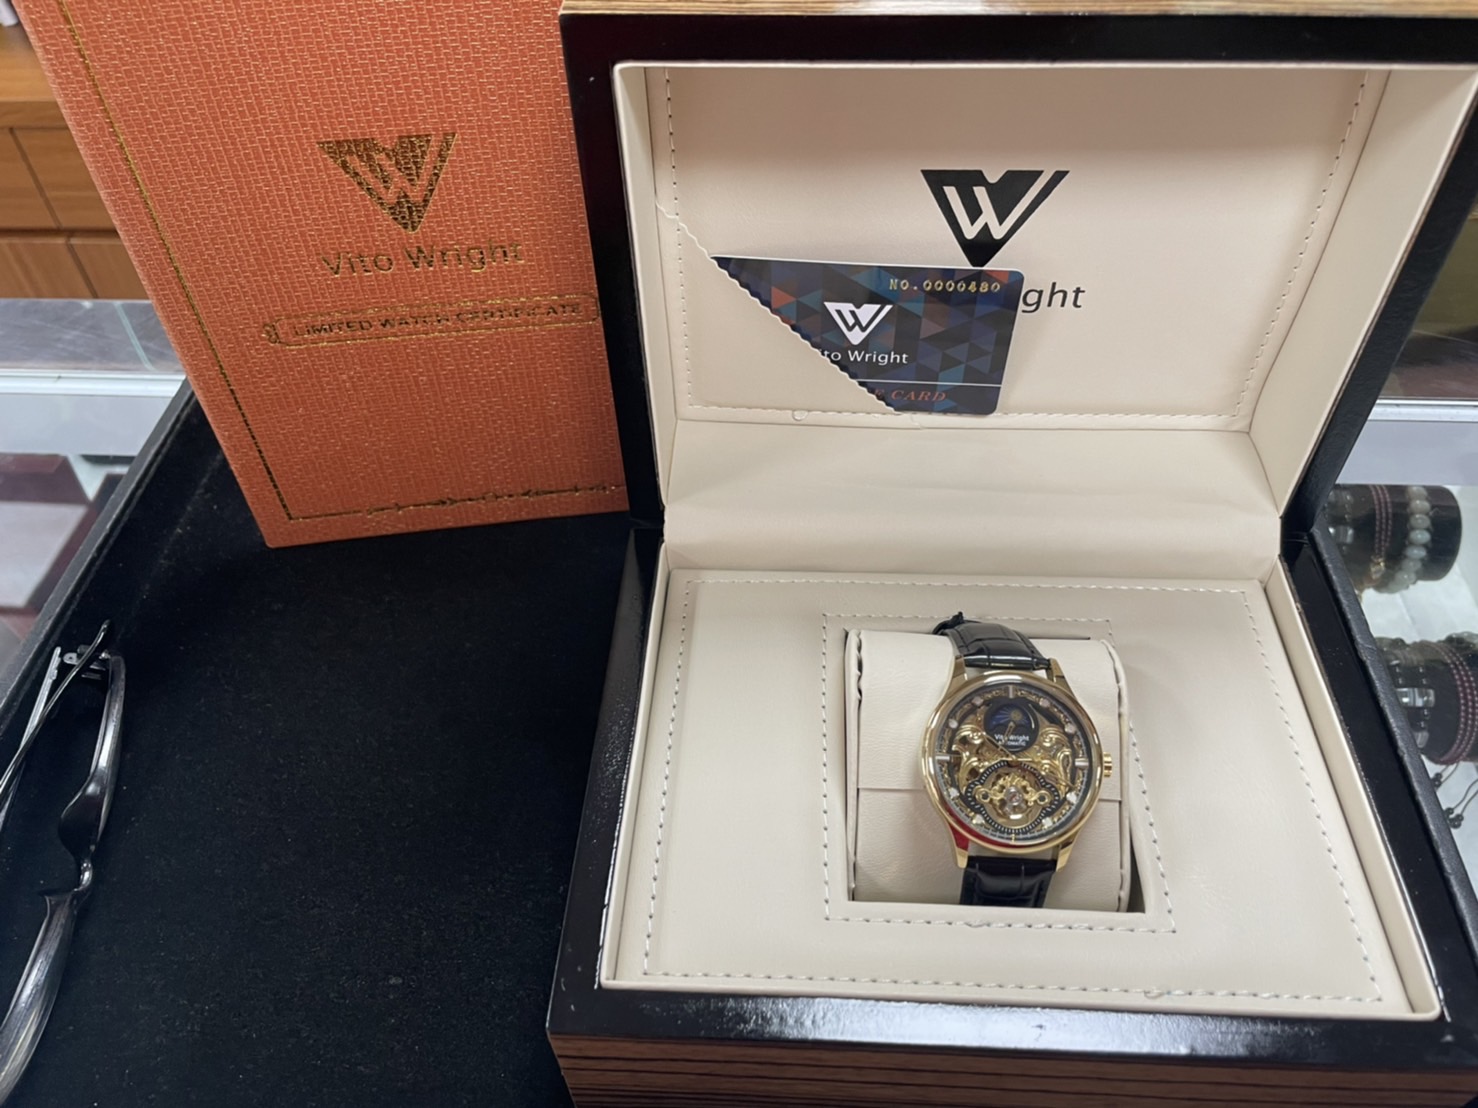  經典收藏分享-Vito Wright維托萊特機械錶